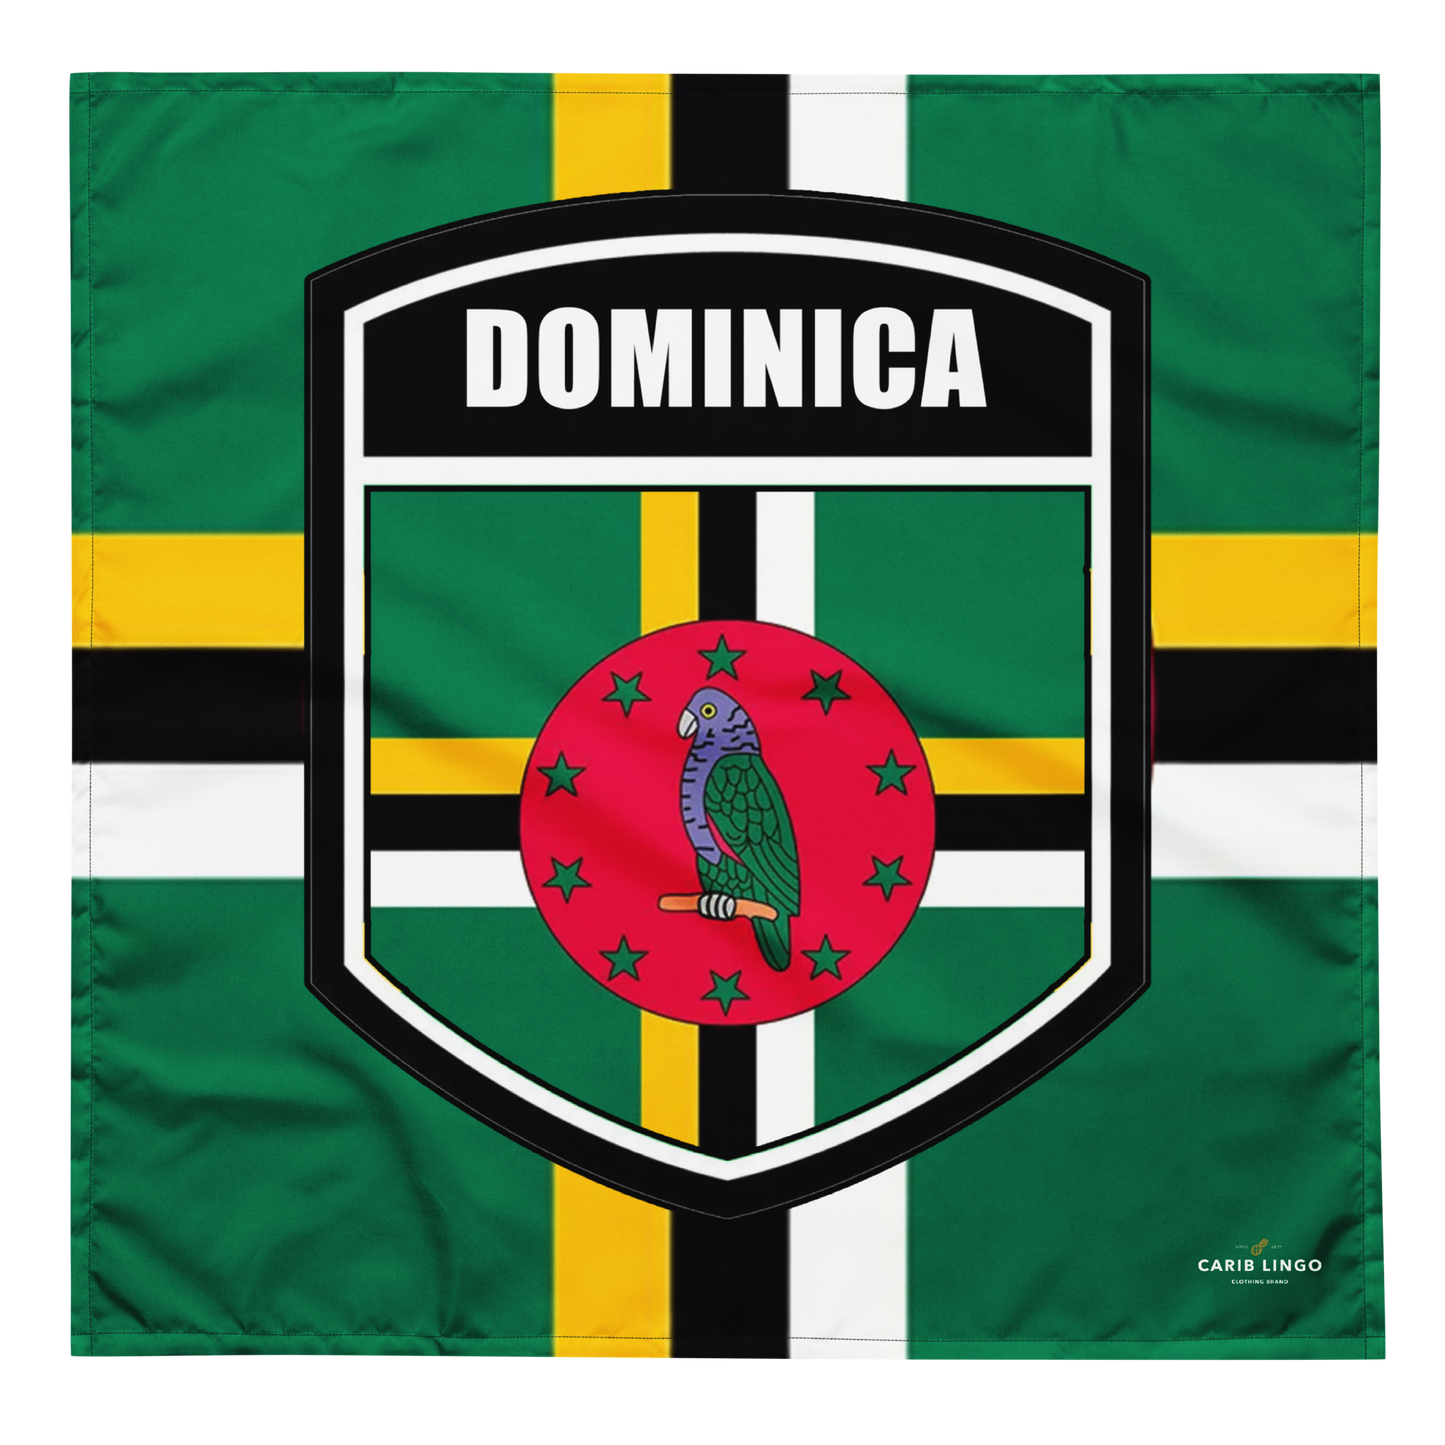 Dominica bandana